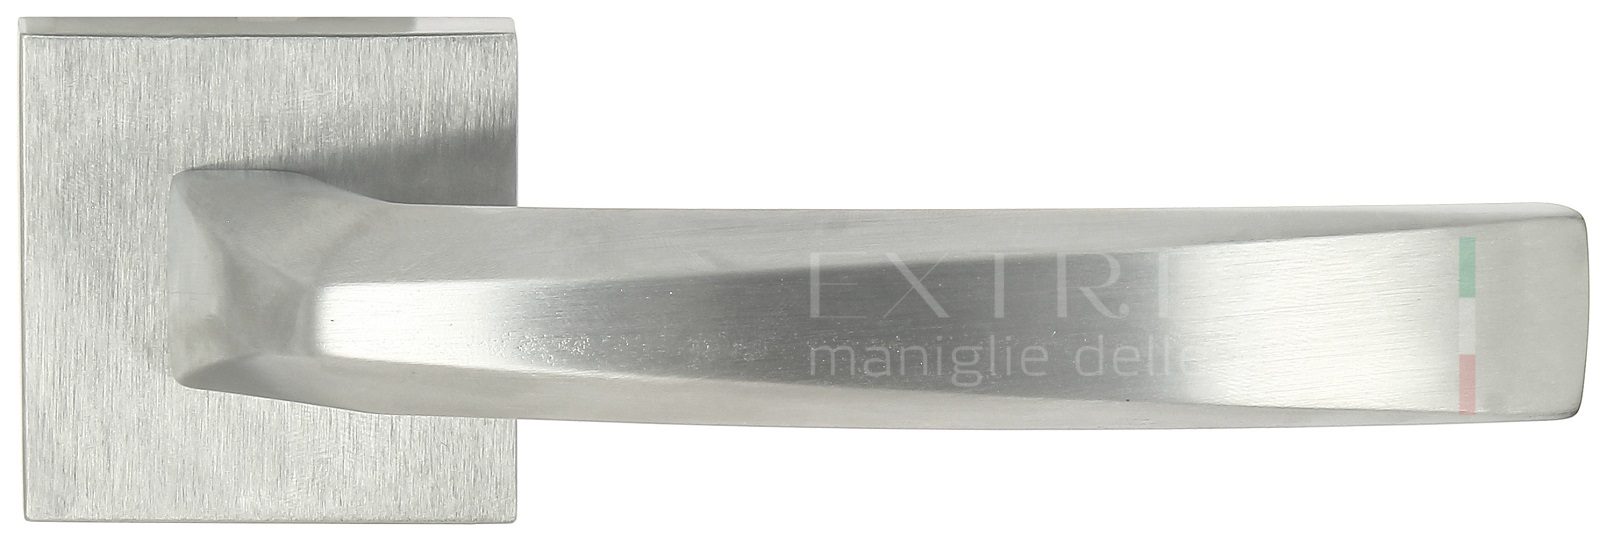 Ручка дверная Extreza Hi-Tech ELIO (Элио) 109 R11 матовый хром F05